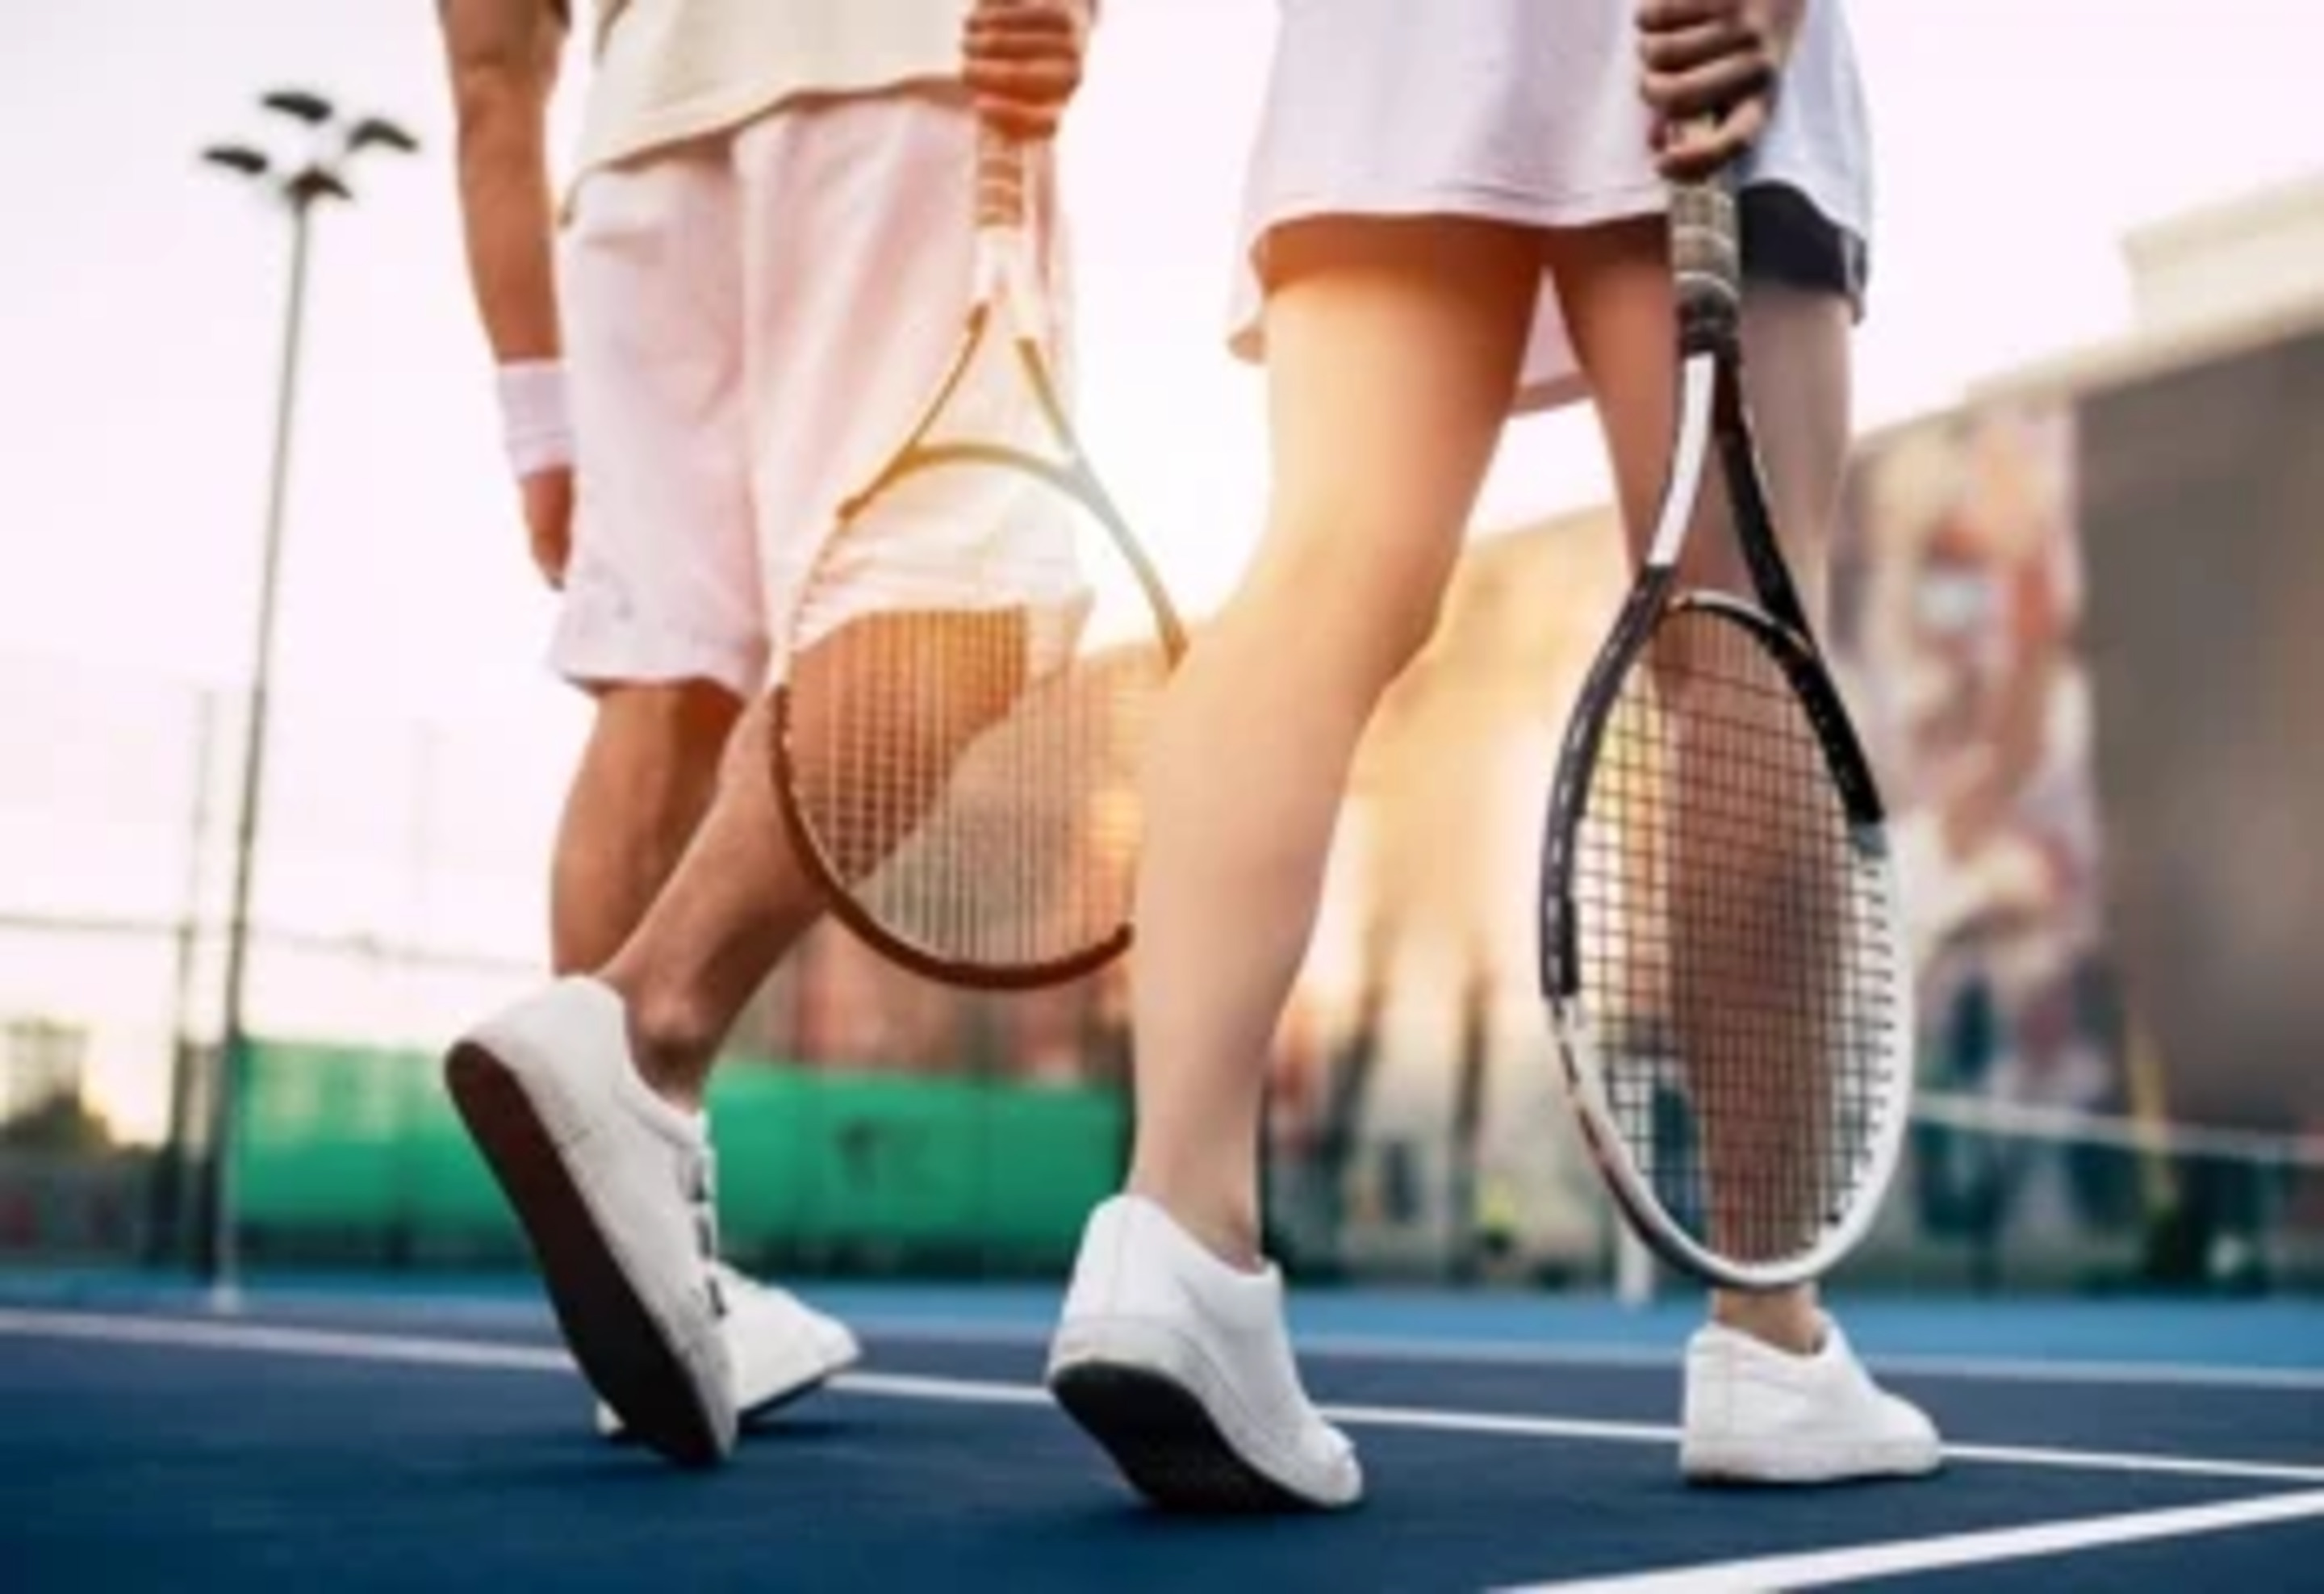 Consejos para jugar al tenis